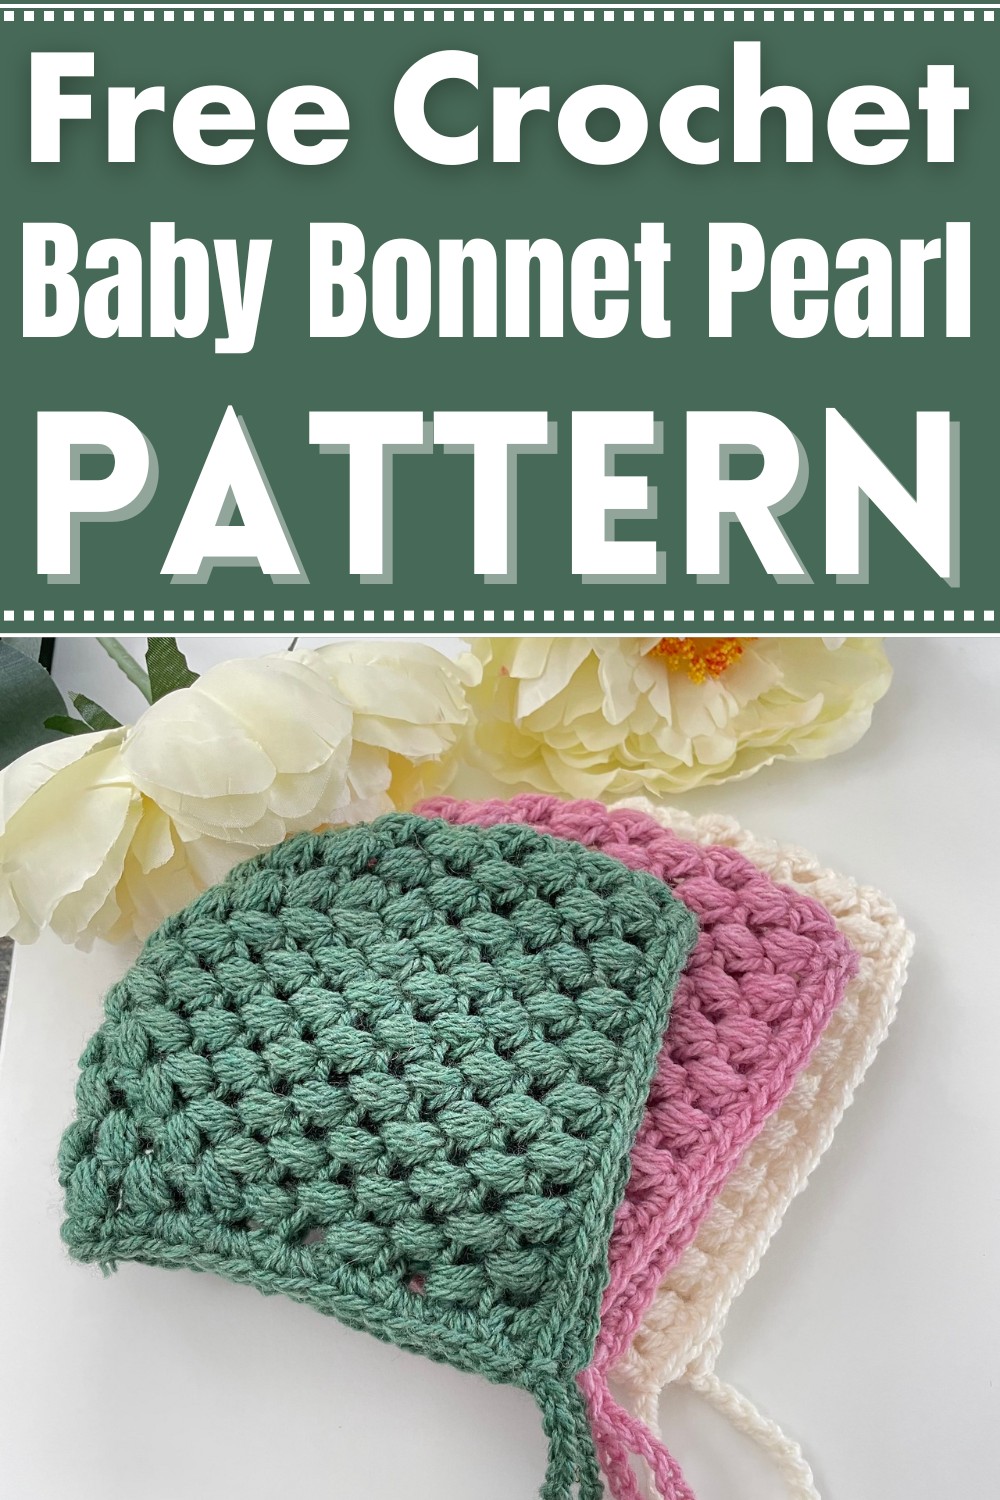 Crochet Baby Bonnet Pearl Pattern